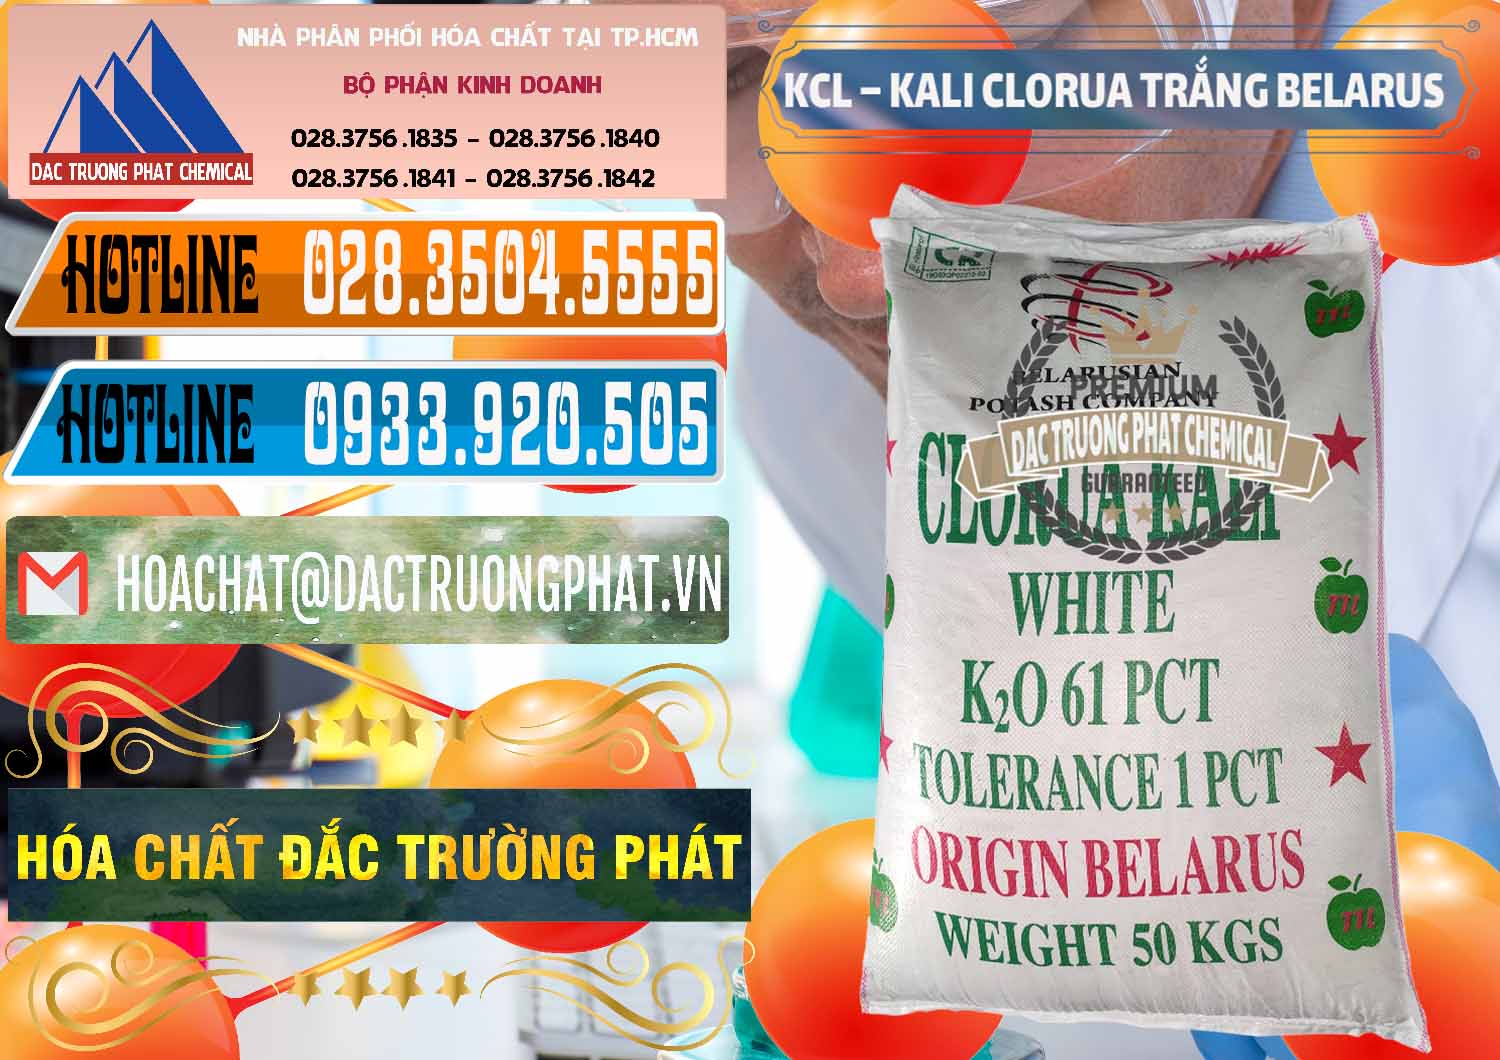 Nơi bán _ cung cấp KCL – Kali Clorua Trắng Belarus - 0085 - Công ty cung cấp - phân phối hóa chất tại TP.HCM - stmp.net